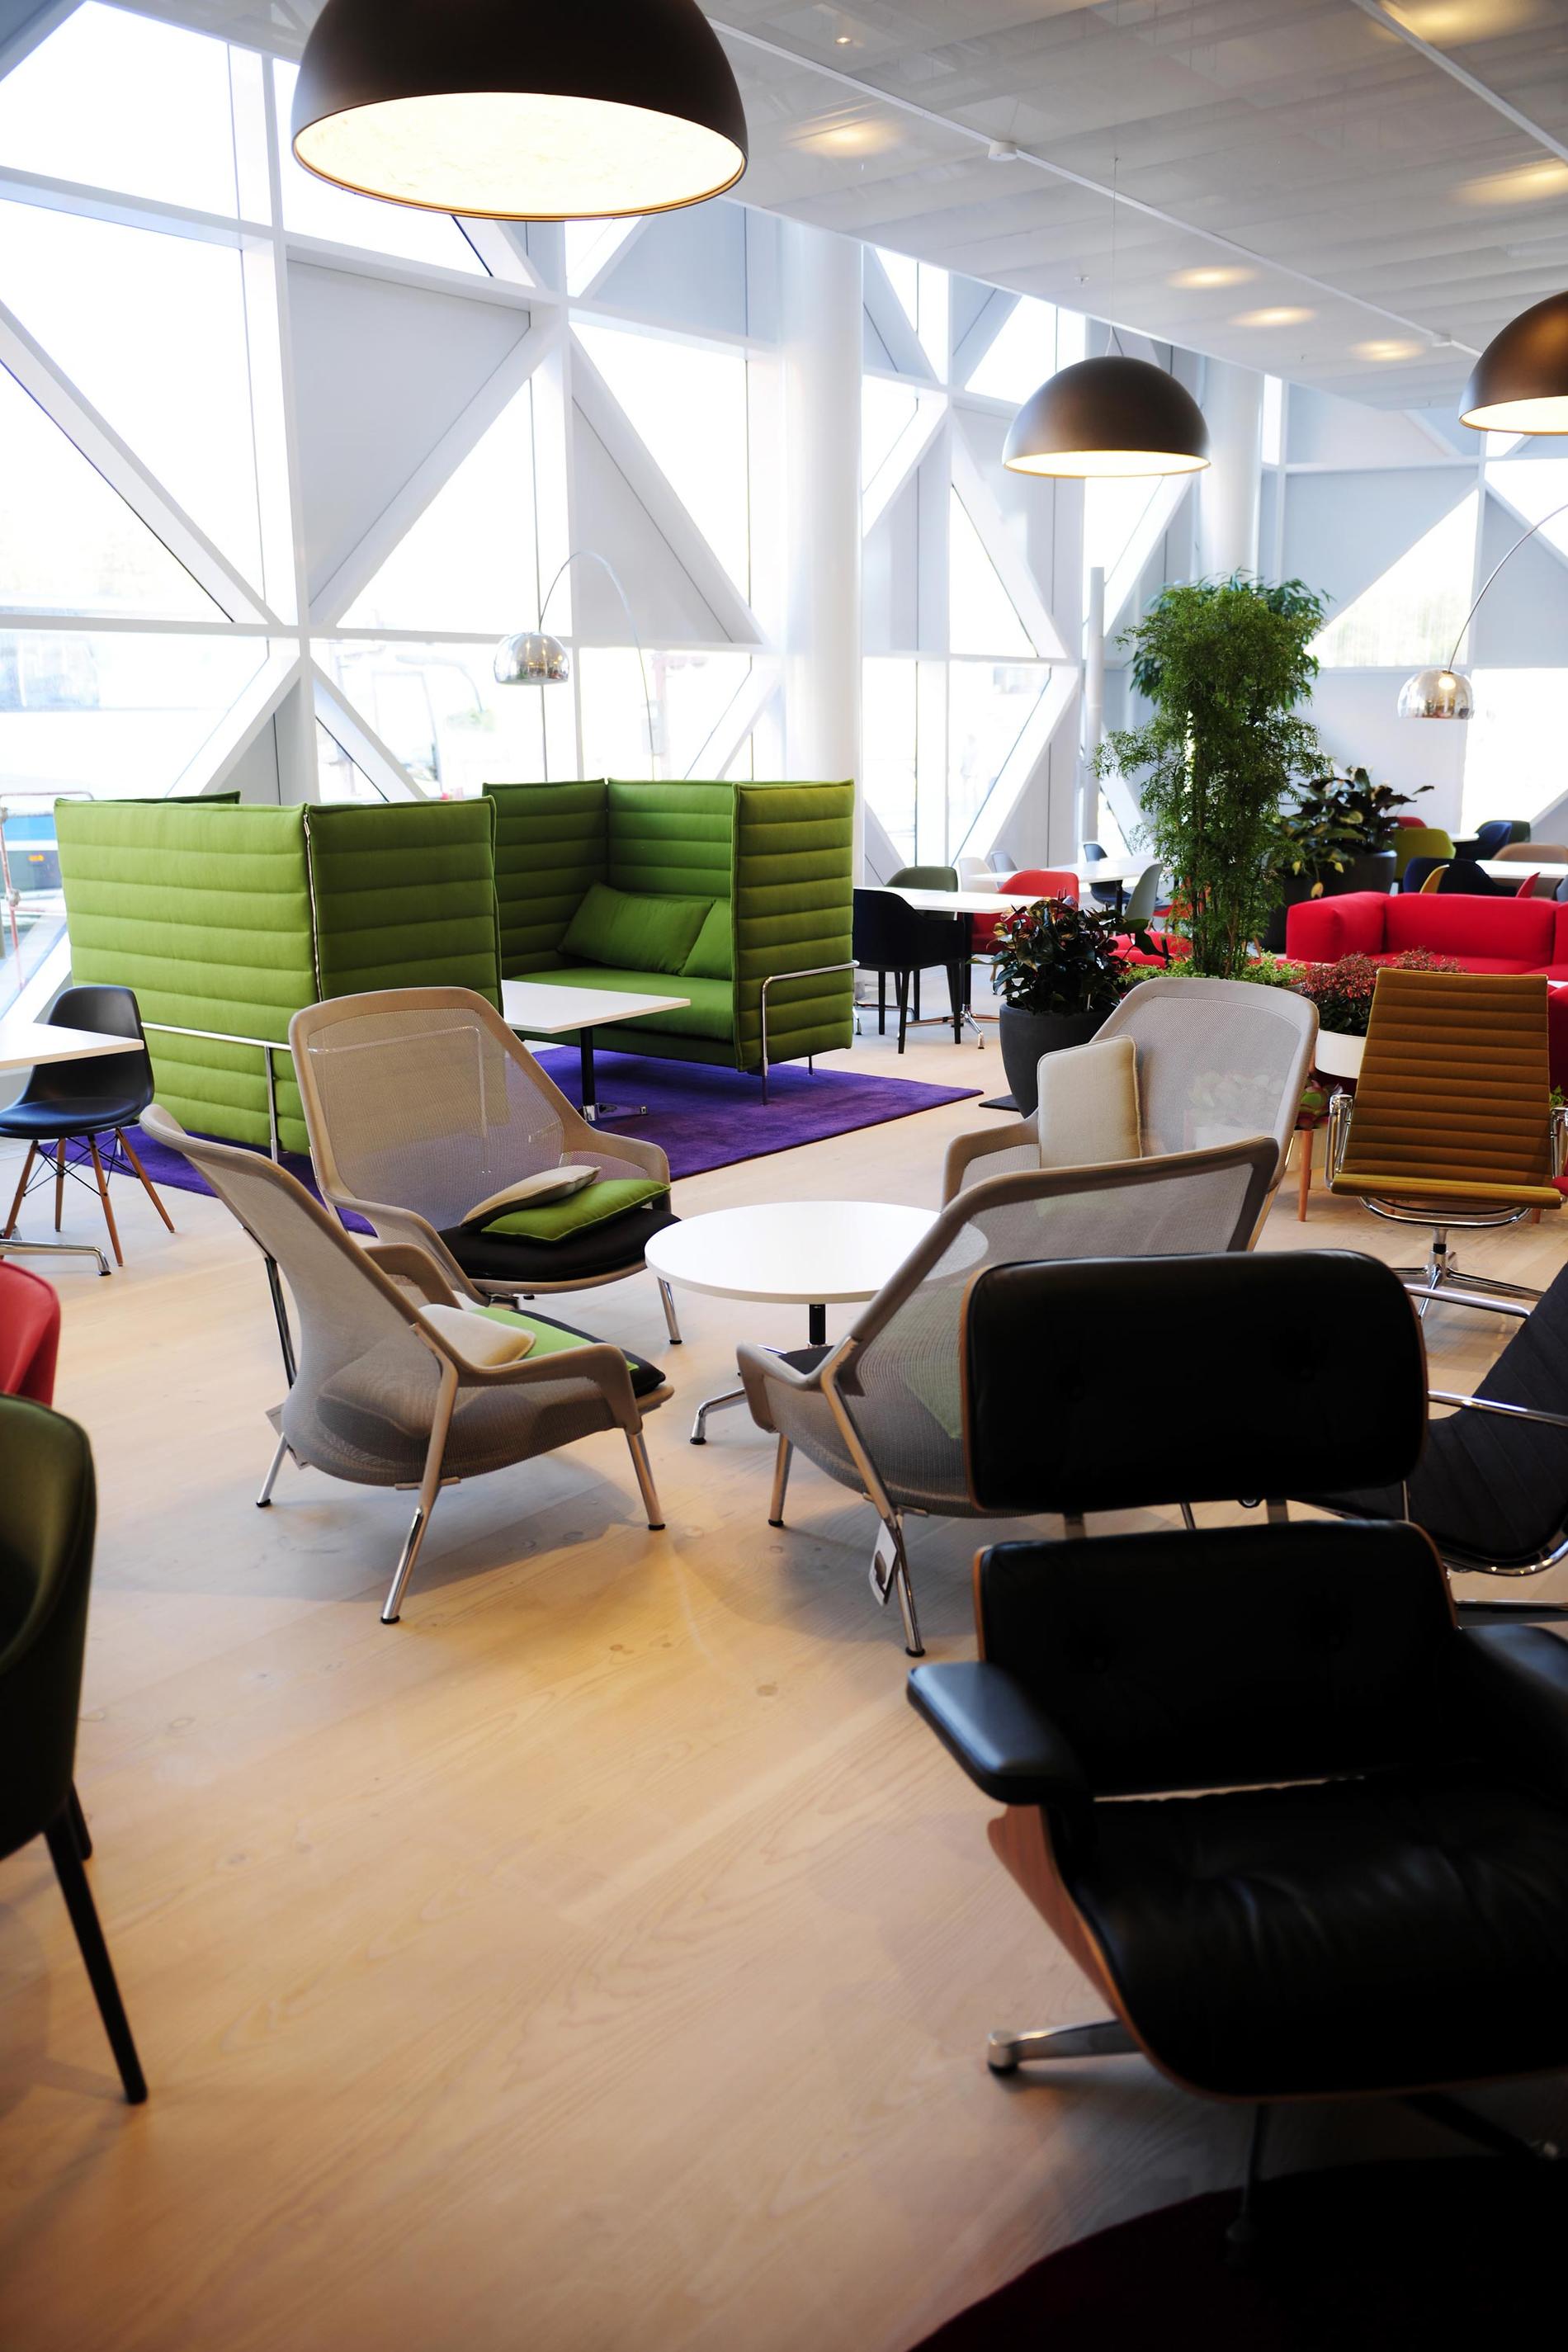 Lobbyloungen är ett färgsprakande landskap med massor av stolar i olika stilar och färger.